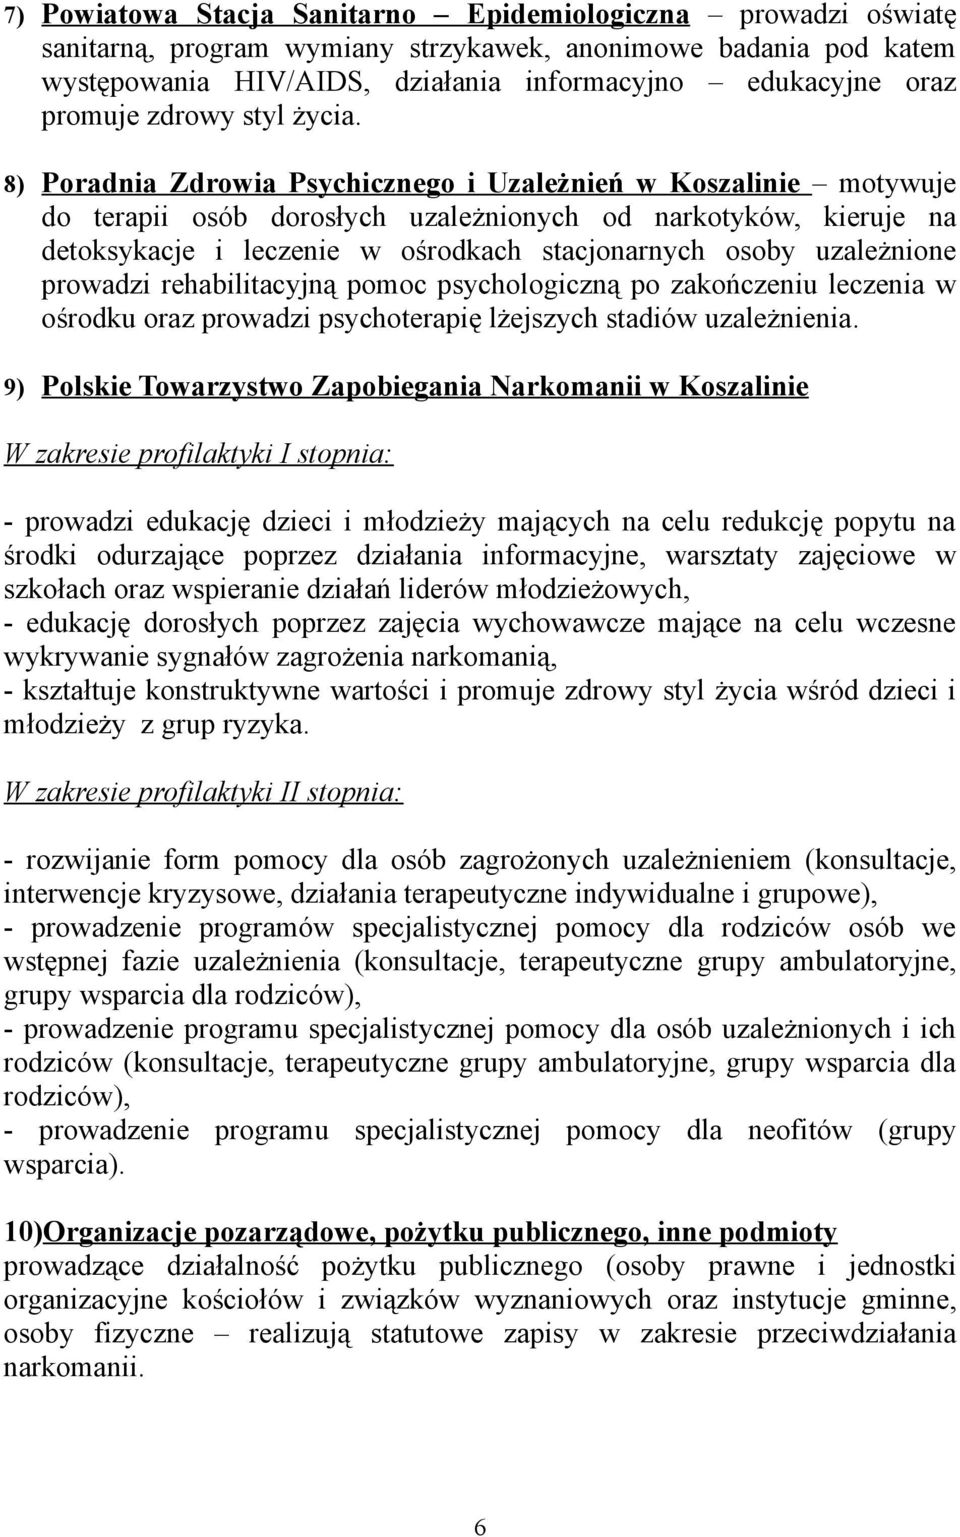 8) Poradnia Zdrowia Psychicznego i Uzależnień w Koszalinie motywuje do terapii osób dorosłych uzależnionych od narkotyków, kieruje na detoksykacje i leczenie w ośrodkach stacjonarnych osoby